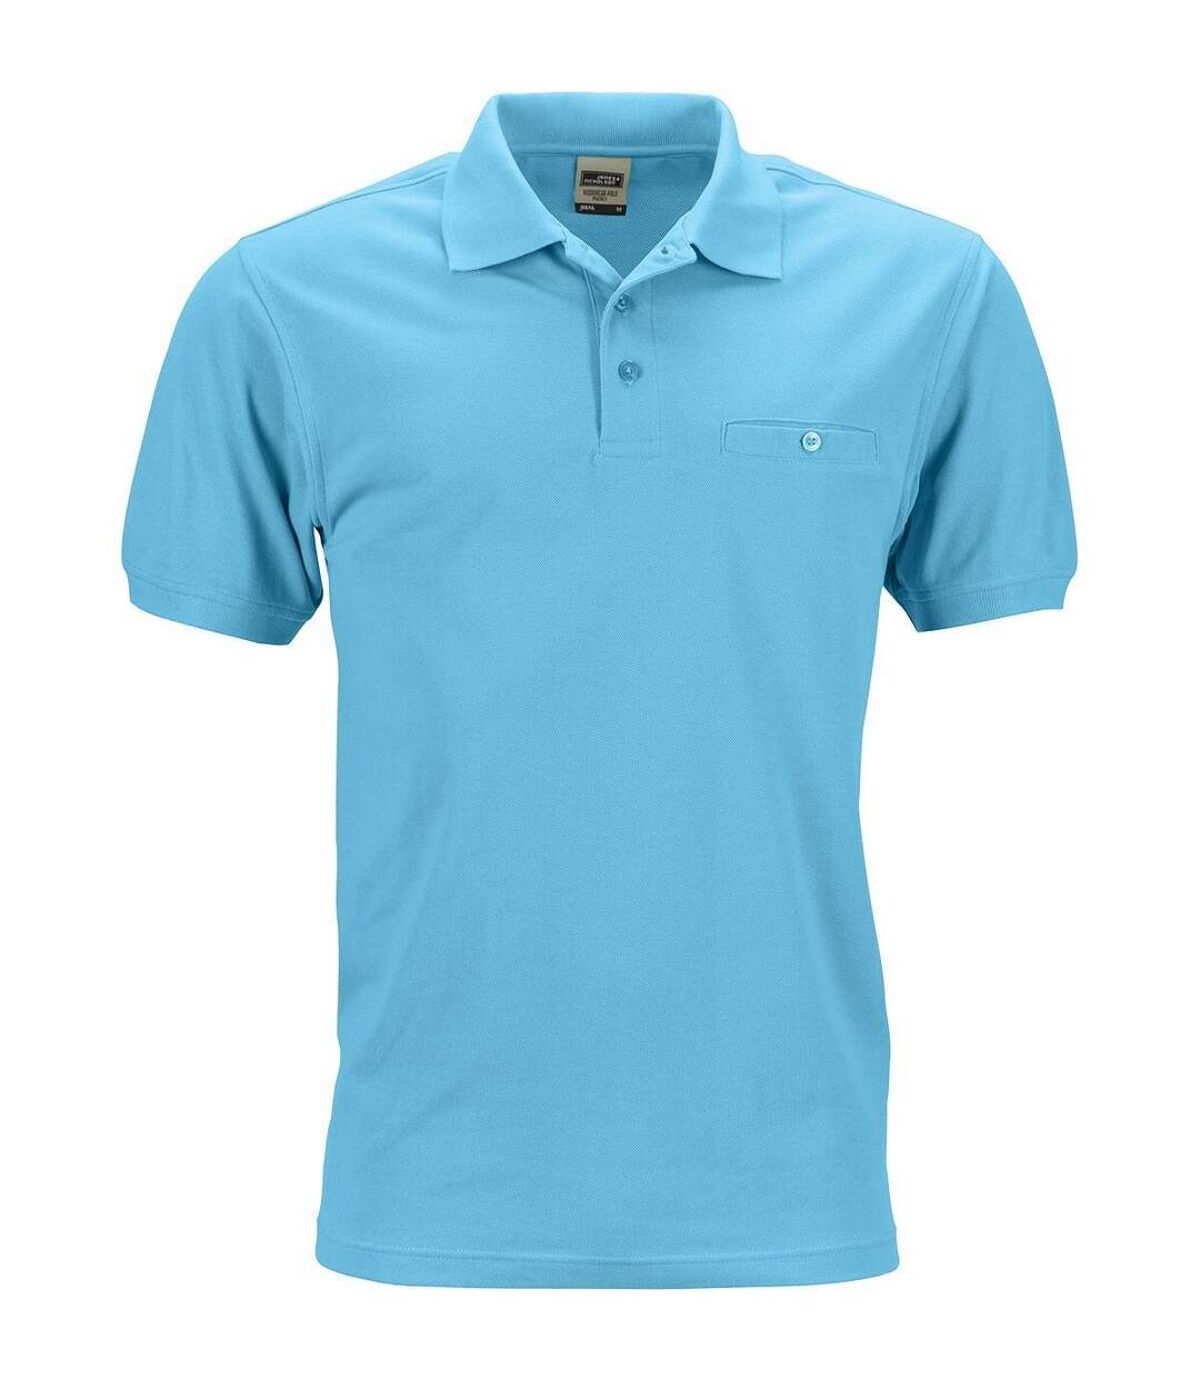 Polo homme poche poitrine - workwear - JN846 - bleu turquoise